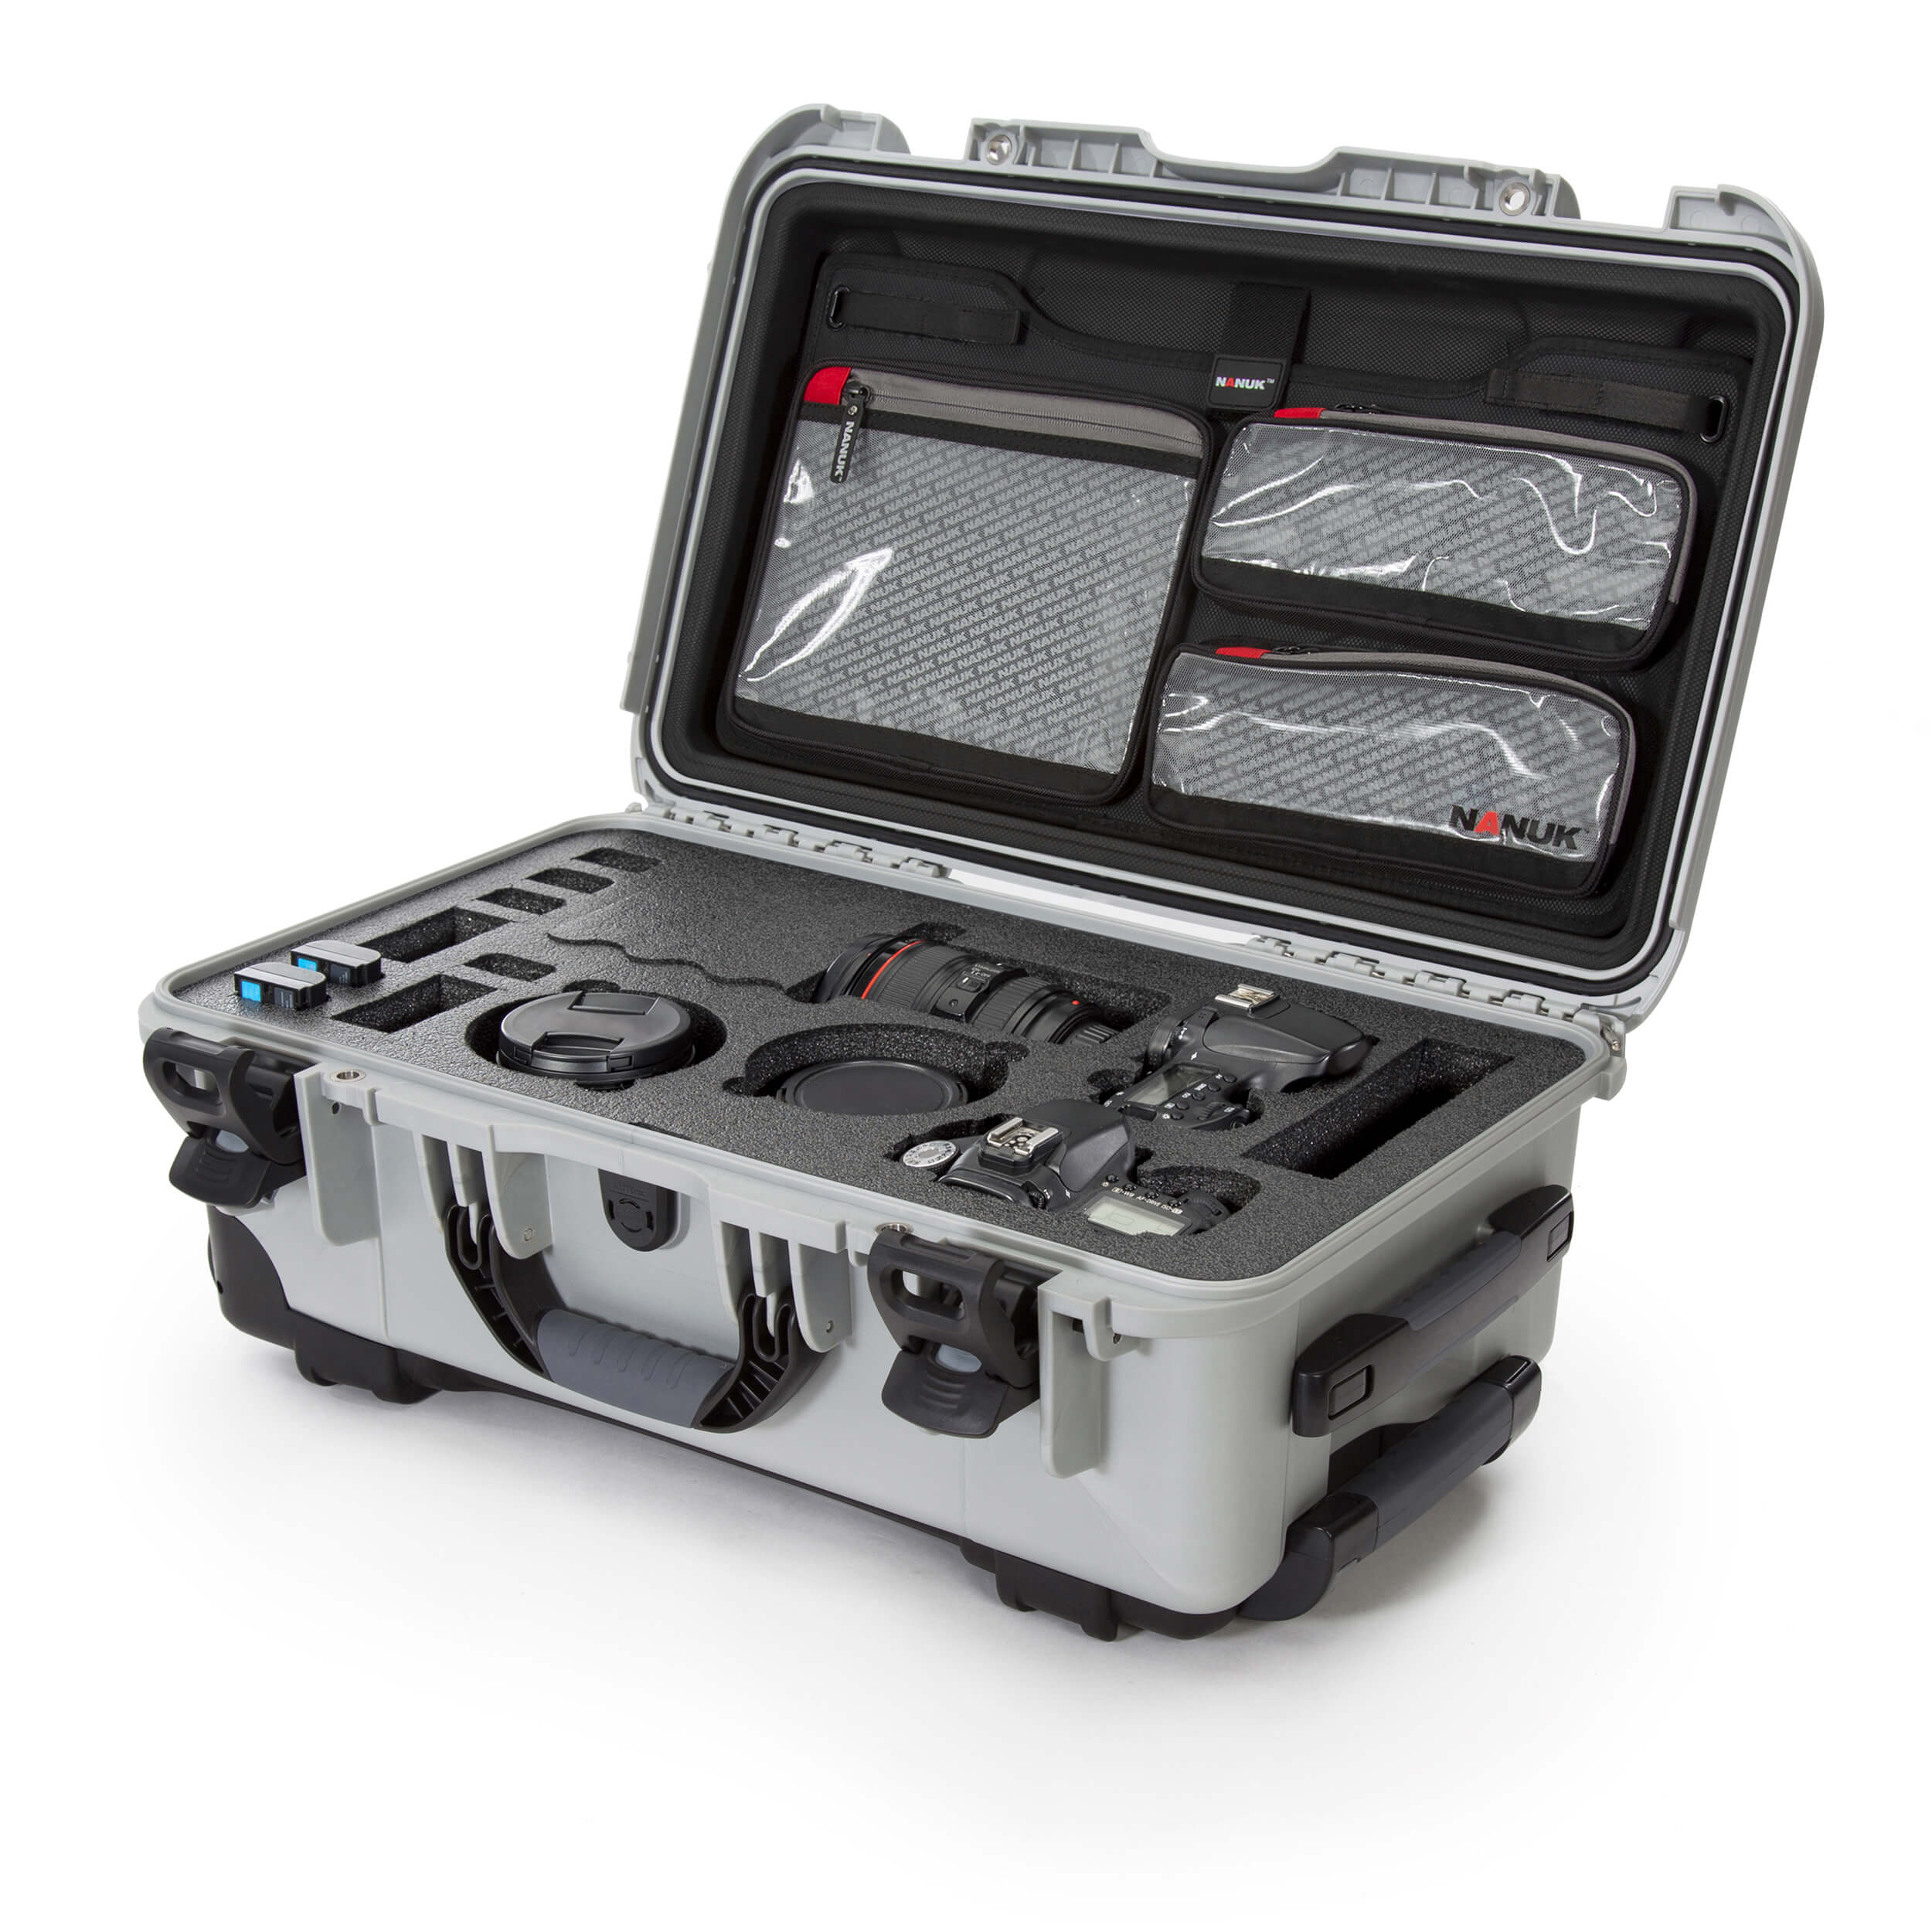 NANUK 935 DSLR Camera valise-Camera valise-Argent- Organisateur de couvercle-NANUK